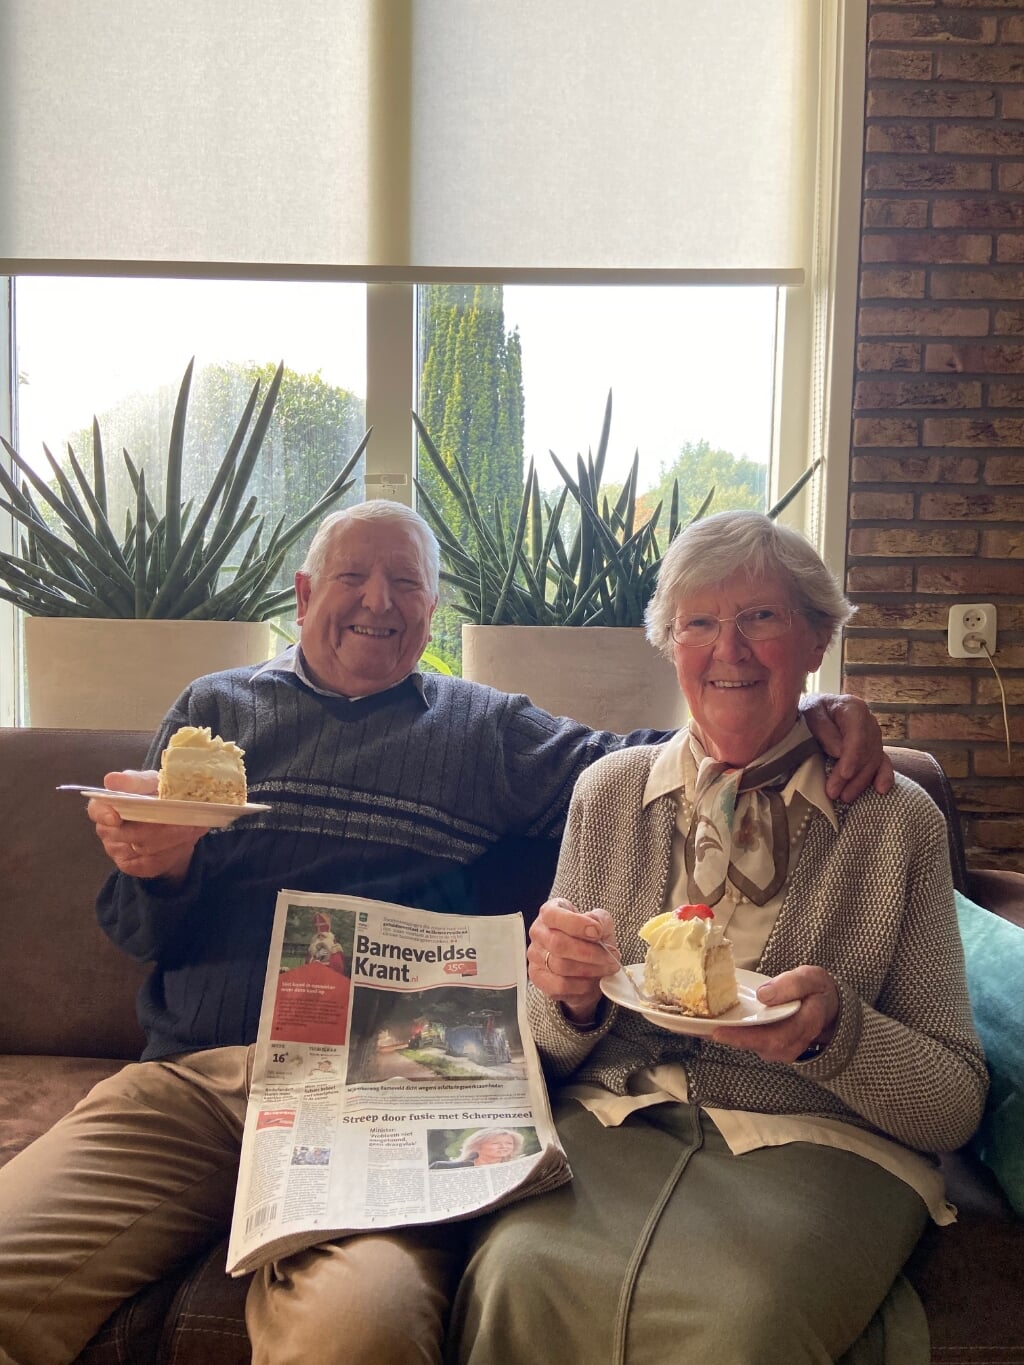 Opa en oma aan het genieten van de slagroomtaart